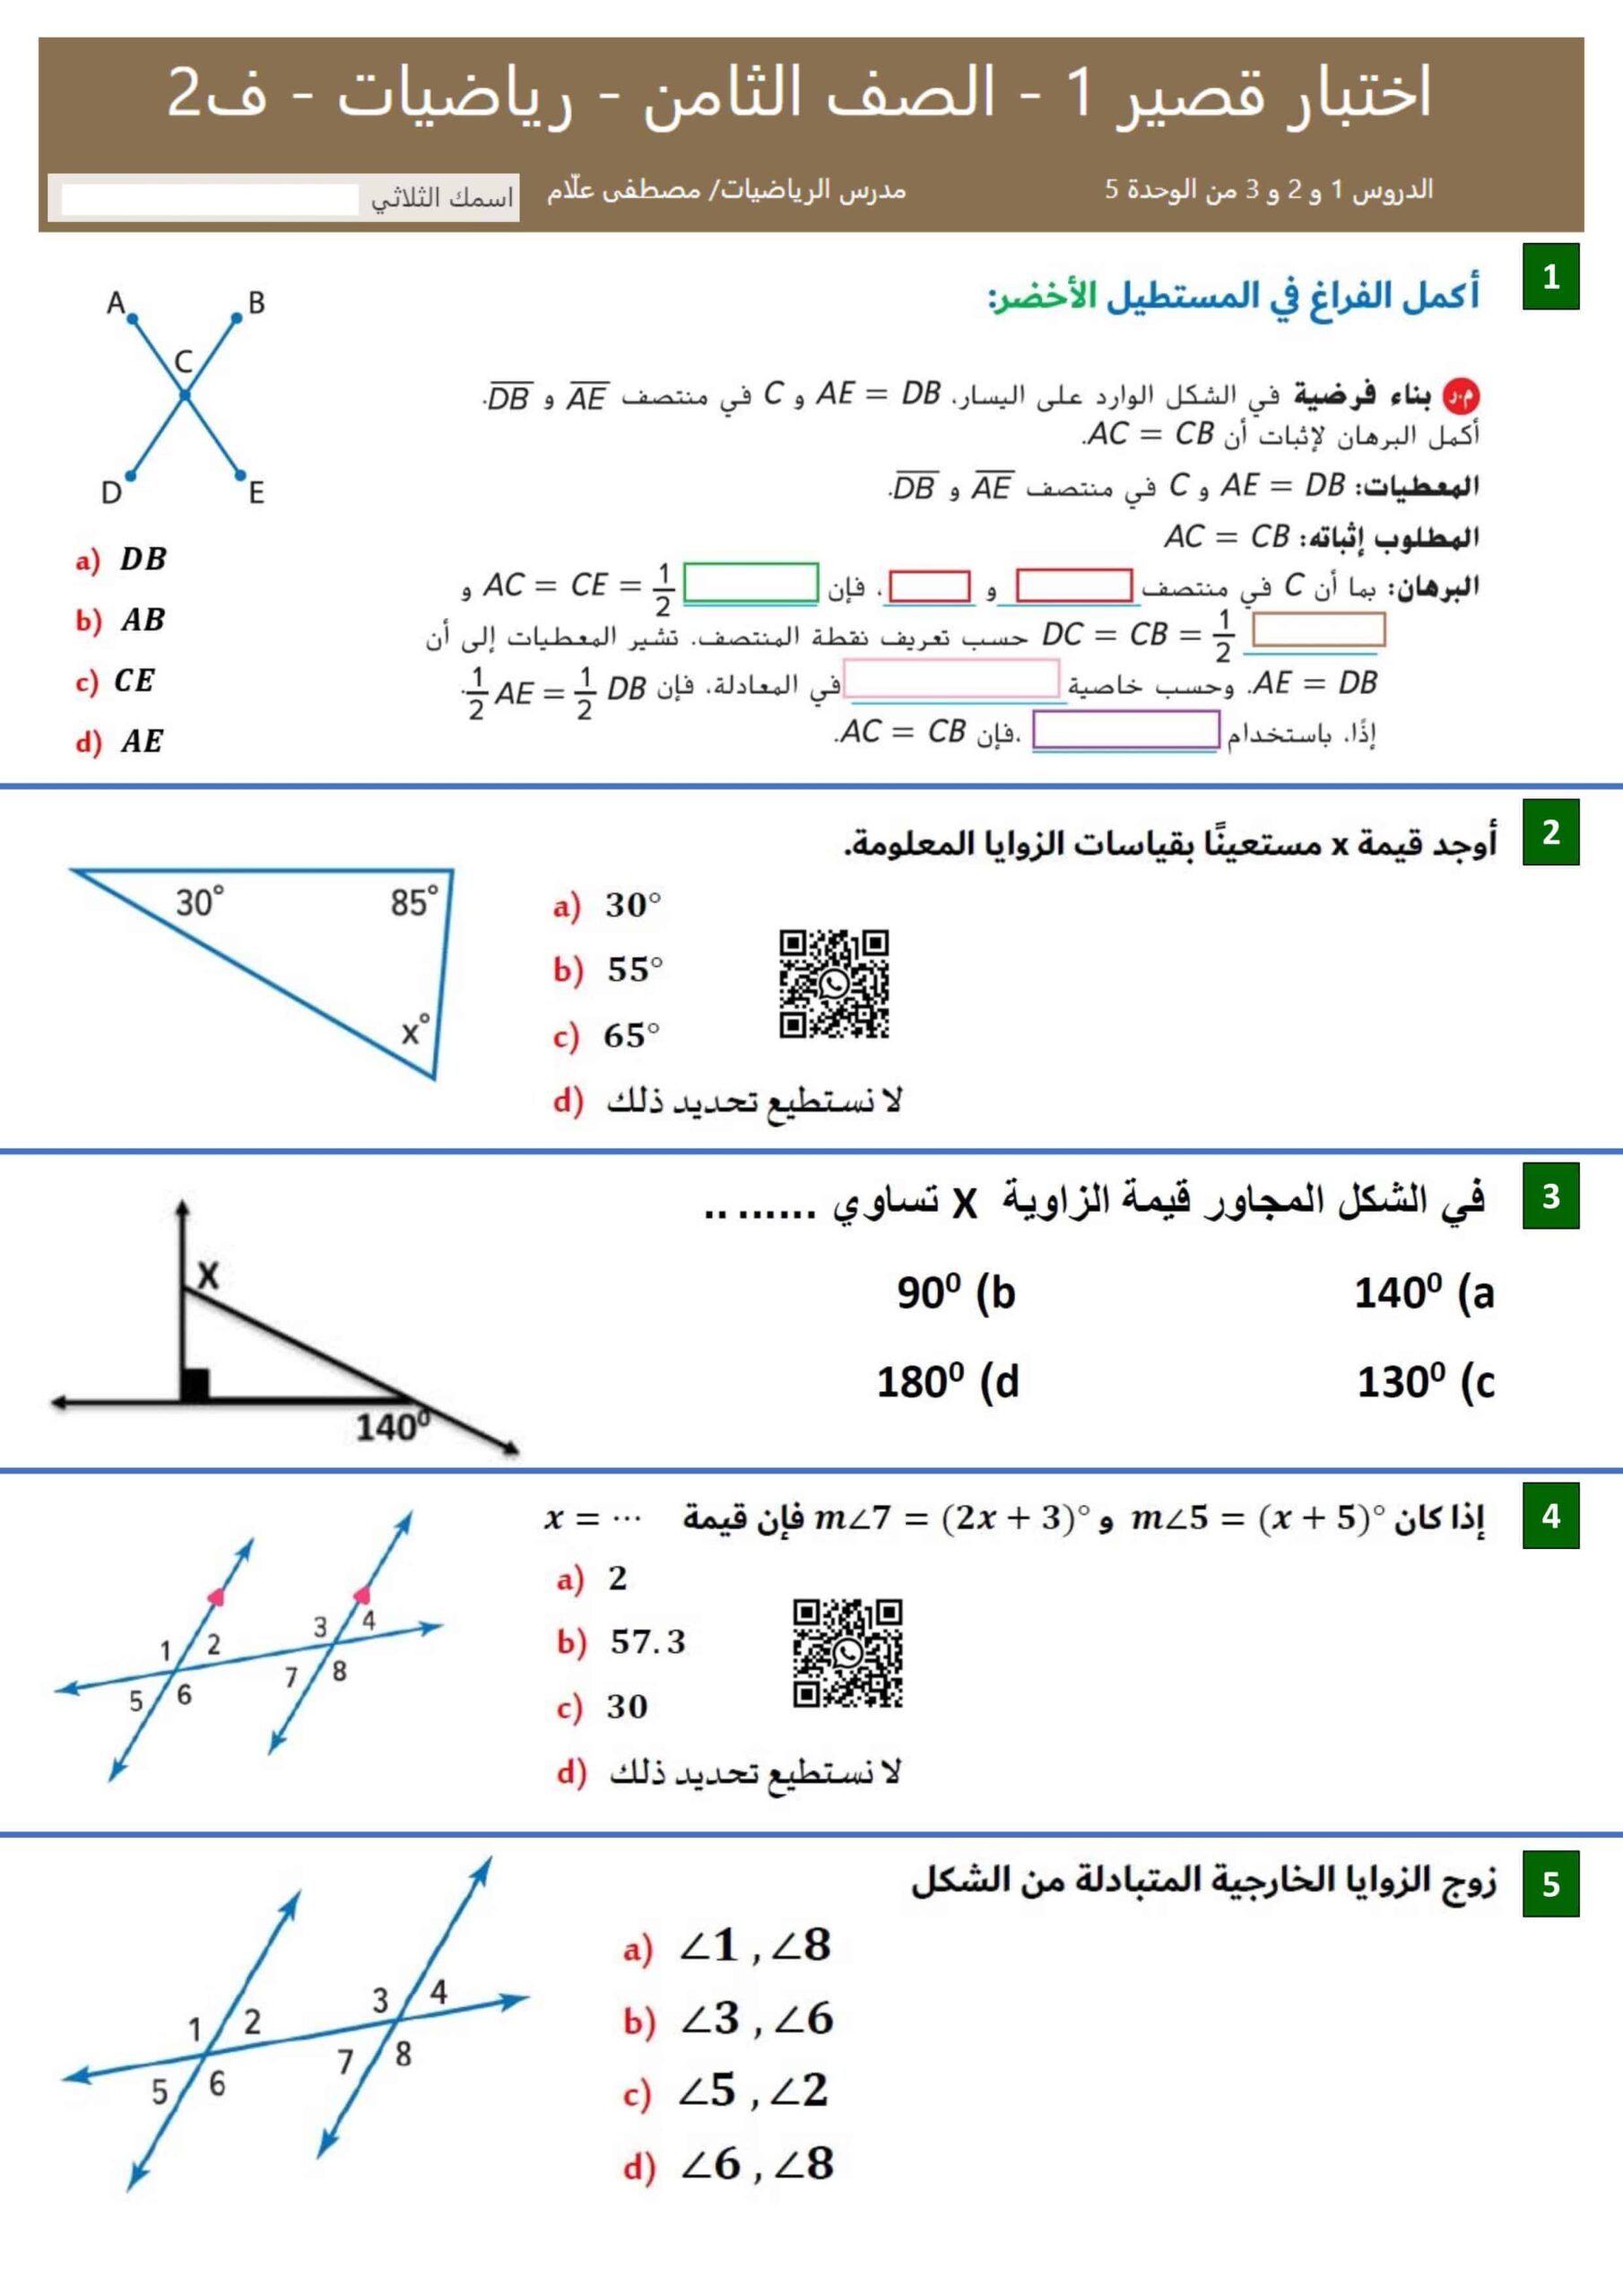 اختبار قصير 1 الدرس الأول والثاني والثالث من الوحدة الخامسة الرياضيات المتكاملة الصف الثامن 